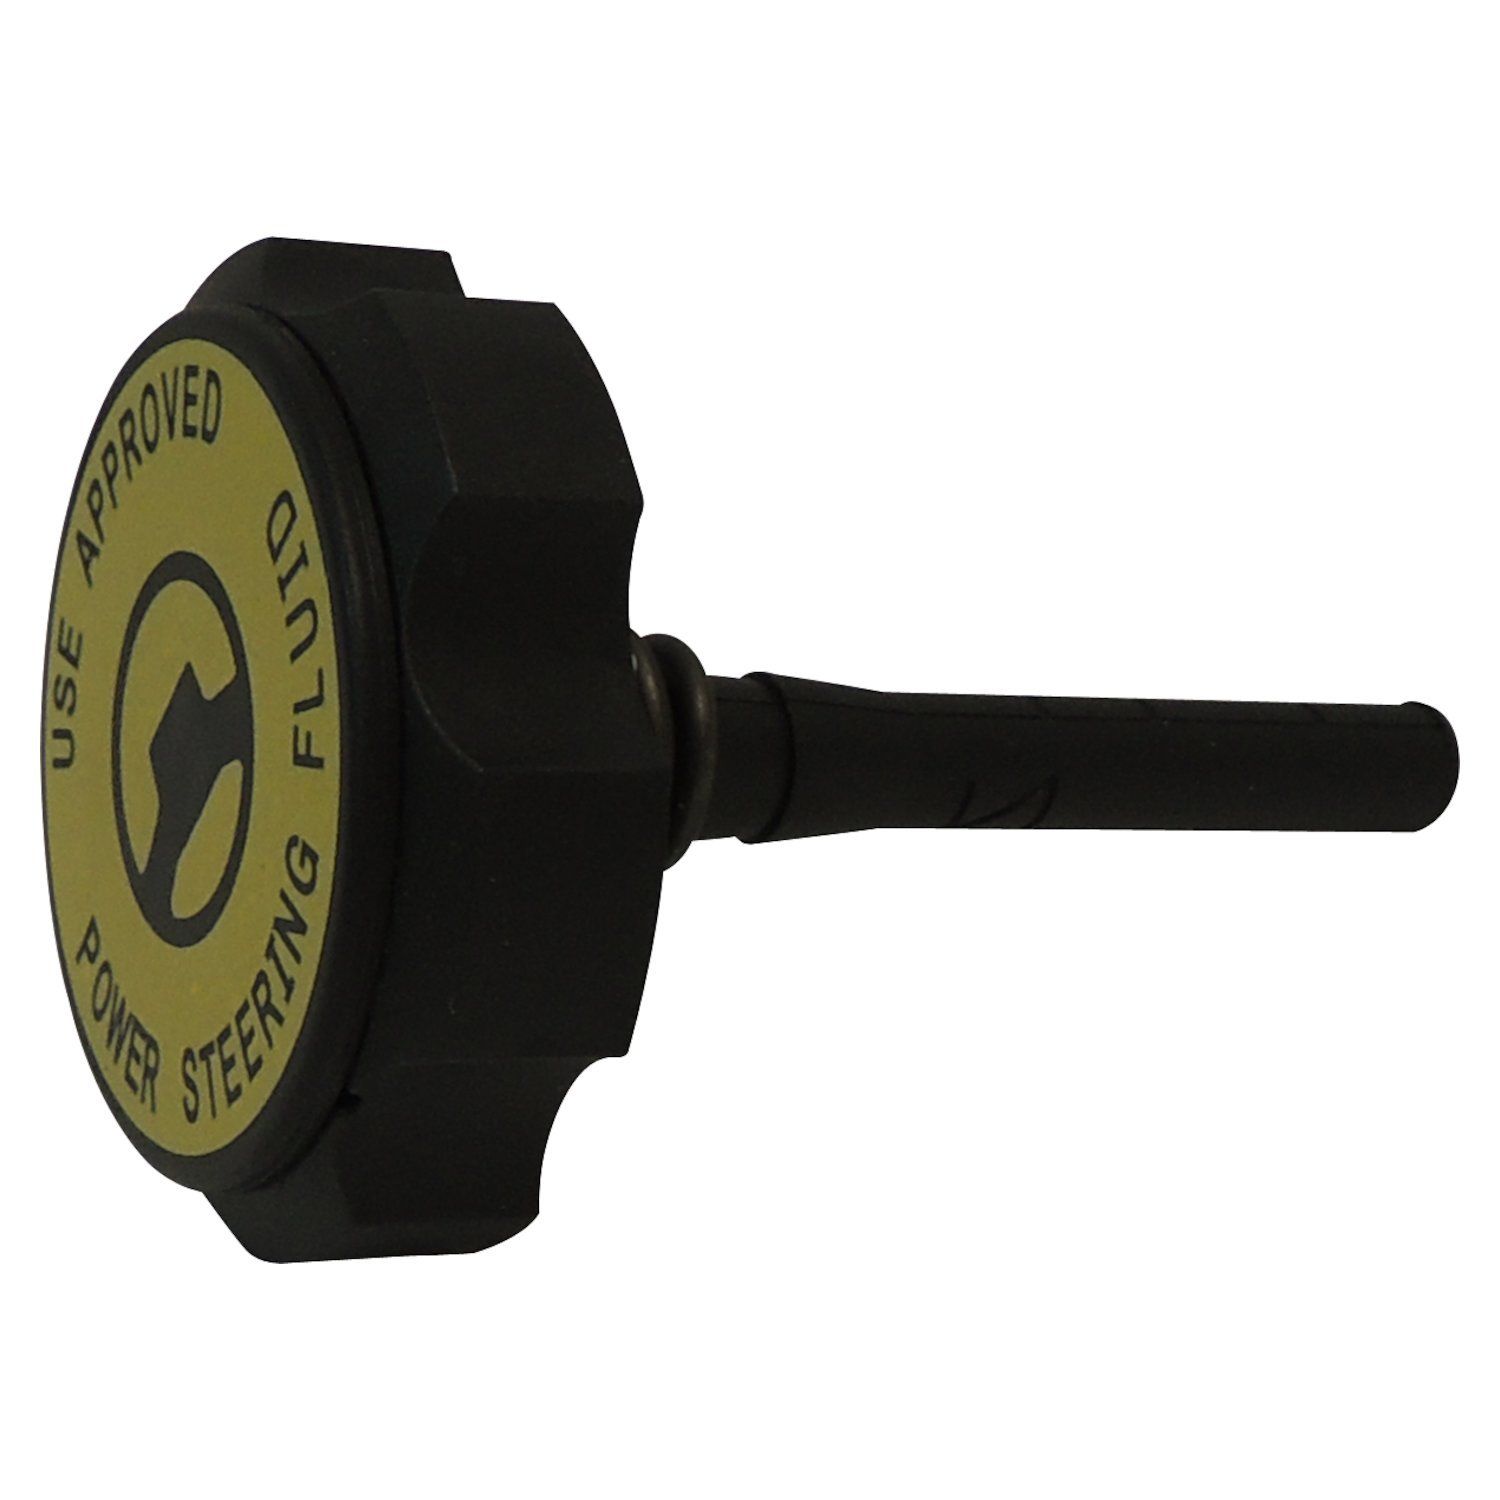 Crown Automotive - Metal Black Power Steering Reservoir Cap